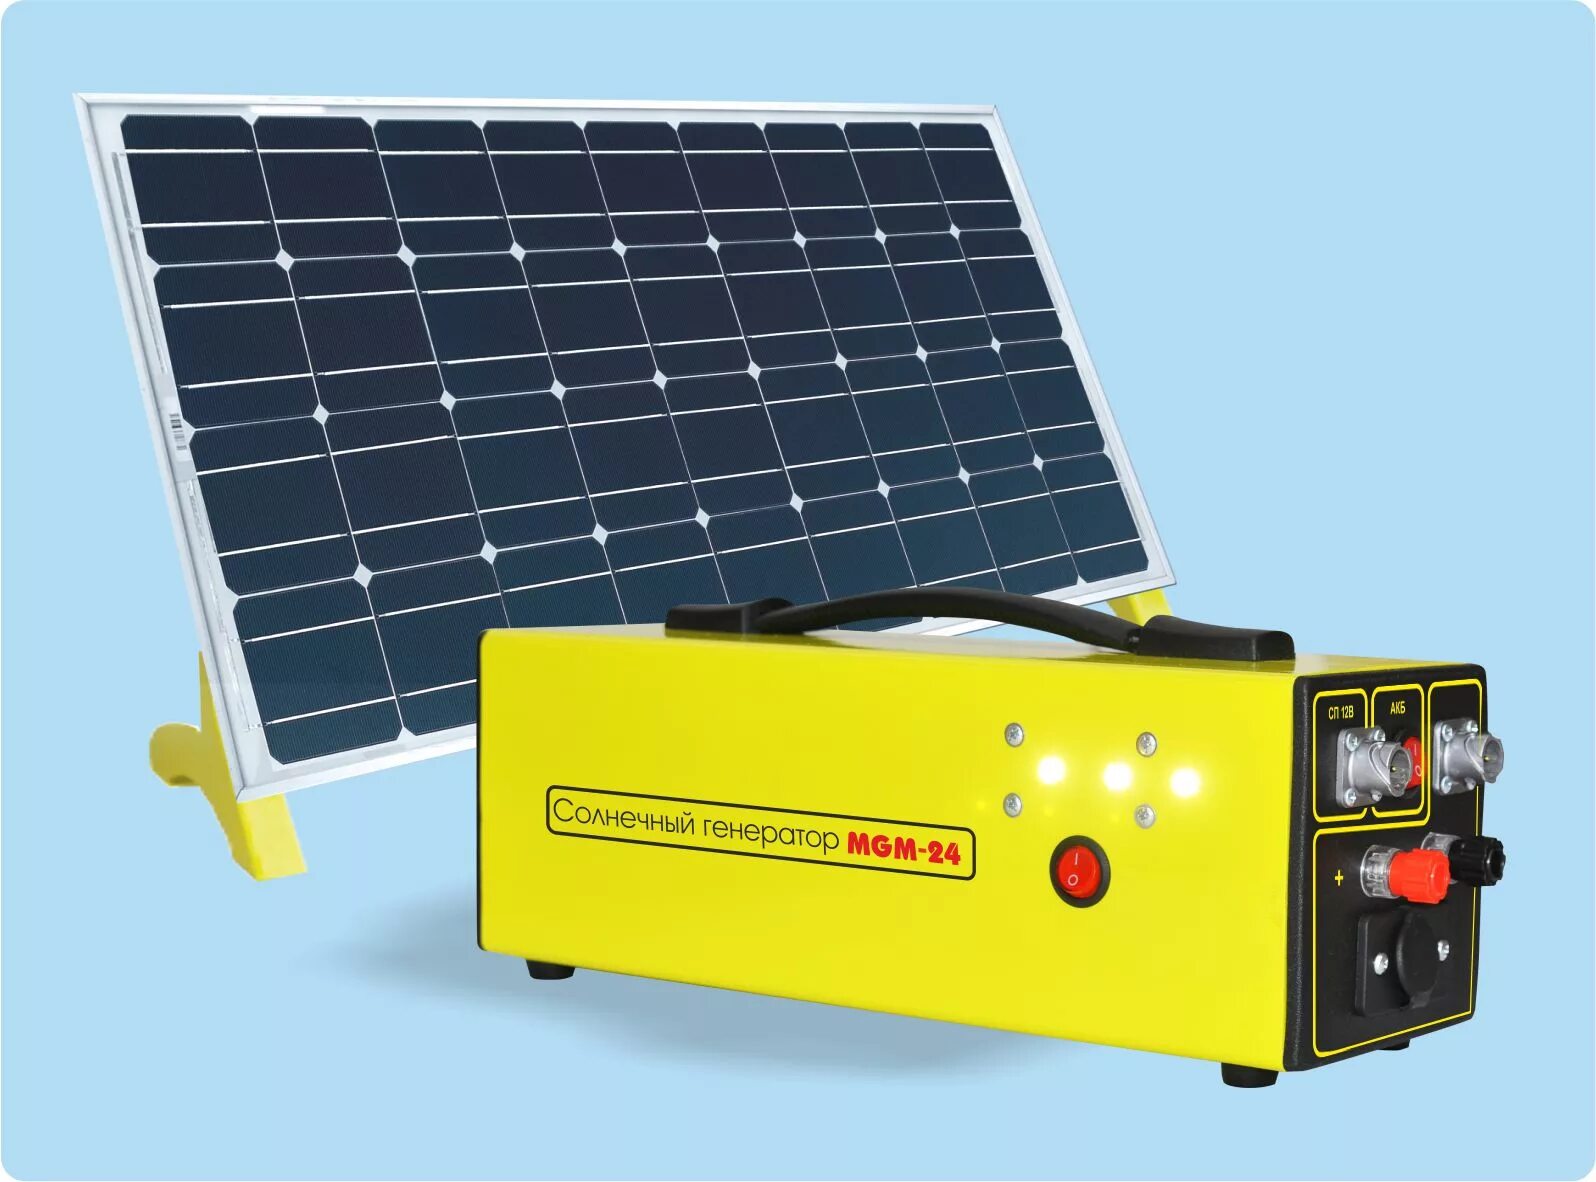 Комплект солнечной батареи с аккумулятором. Солнечная панель 220 вольт. Солнечная электростанция Delta комплект. Солнечный термогенератор. Солнечная панель 1000 Вт 220 вольт.